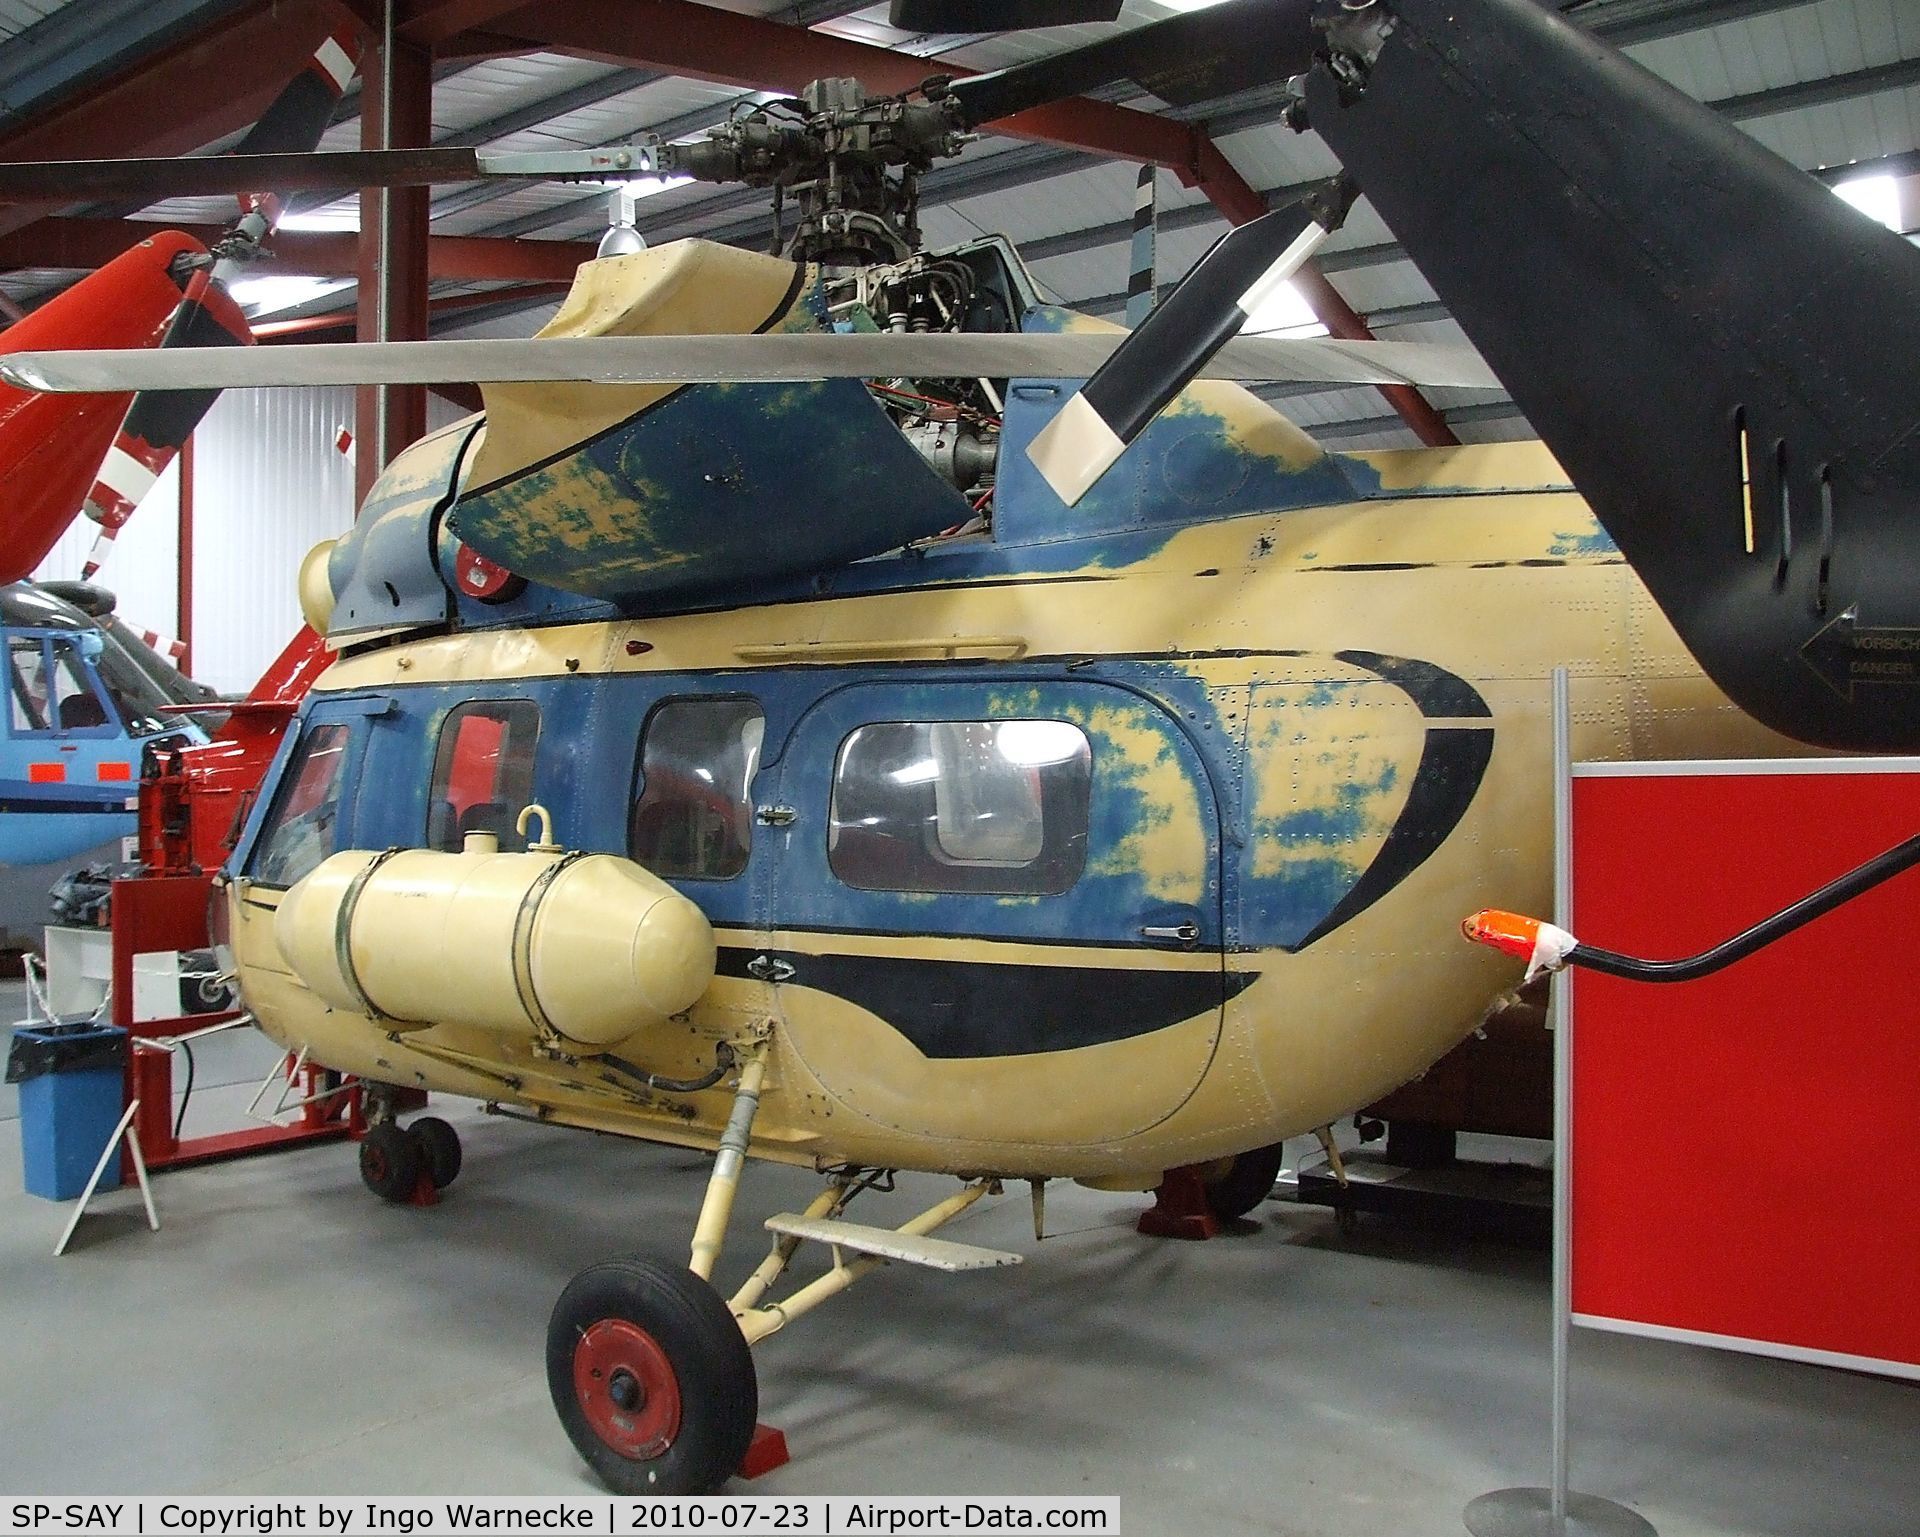 SP-SAY, 1985 PZL-Swidnik Mi-2 C/N 529538125, Mil (PZL-Swidnik) Mi-2 Hoplite at the Helicopter Museum, Weston-super-Mare